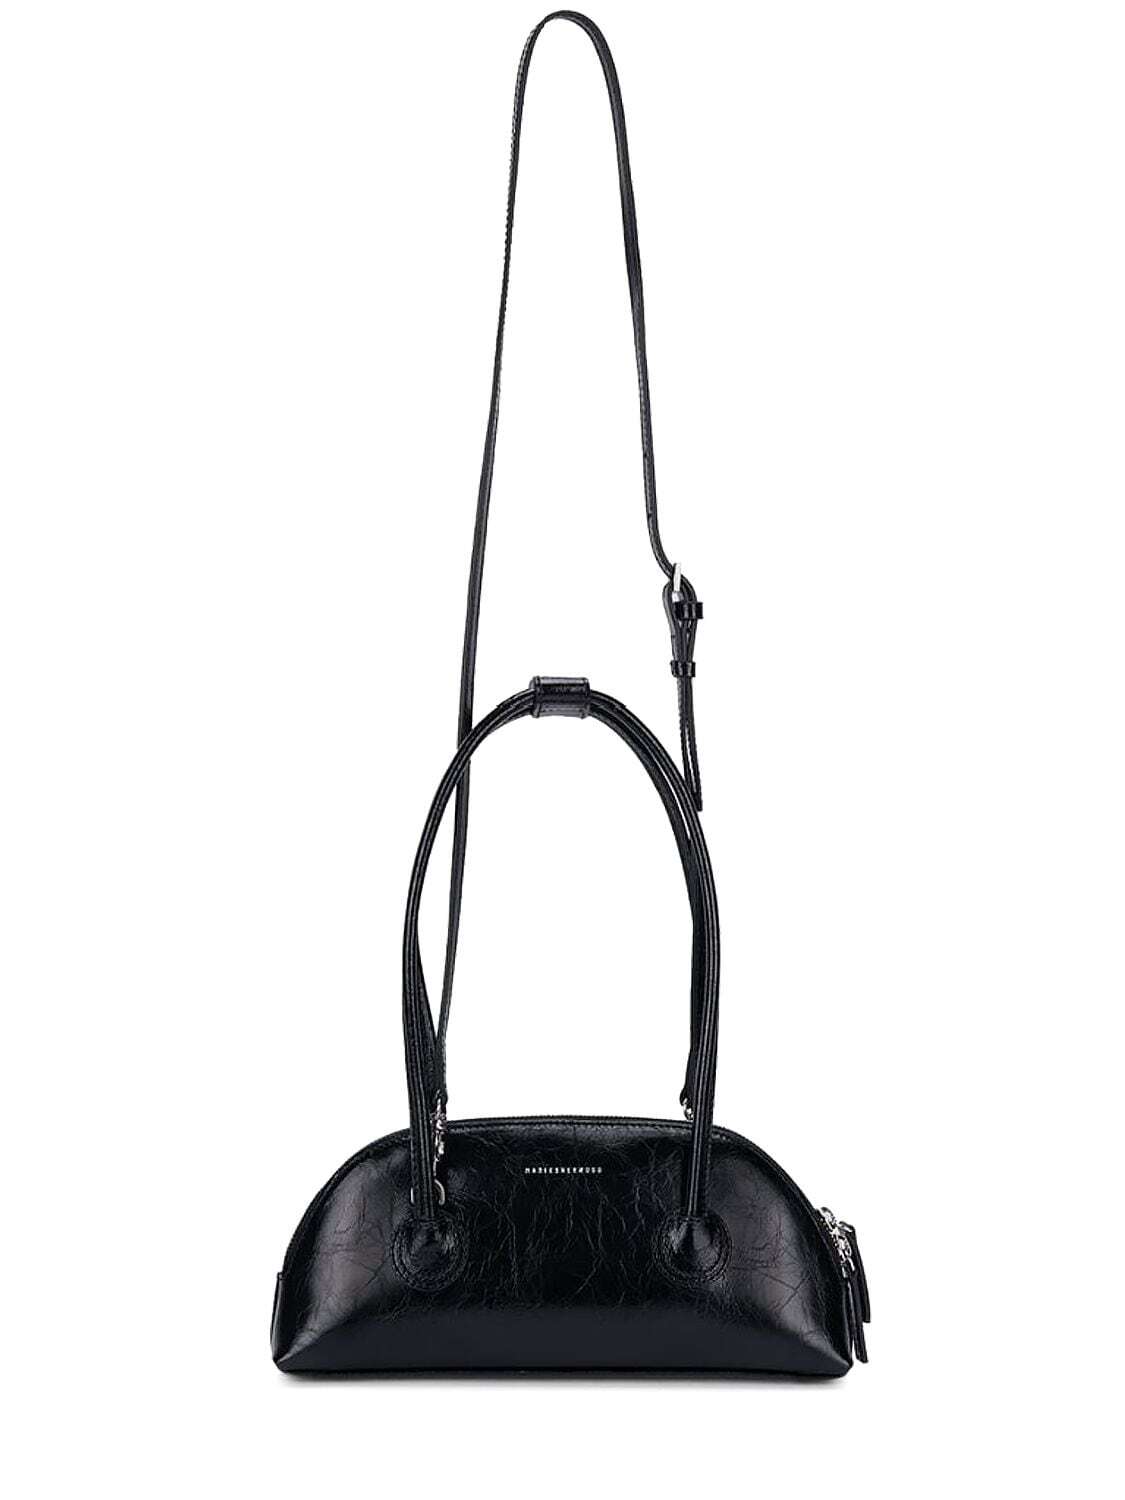 MARGE SHERWOOD Bessette Leather Shoulder Bag in black